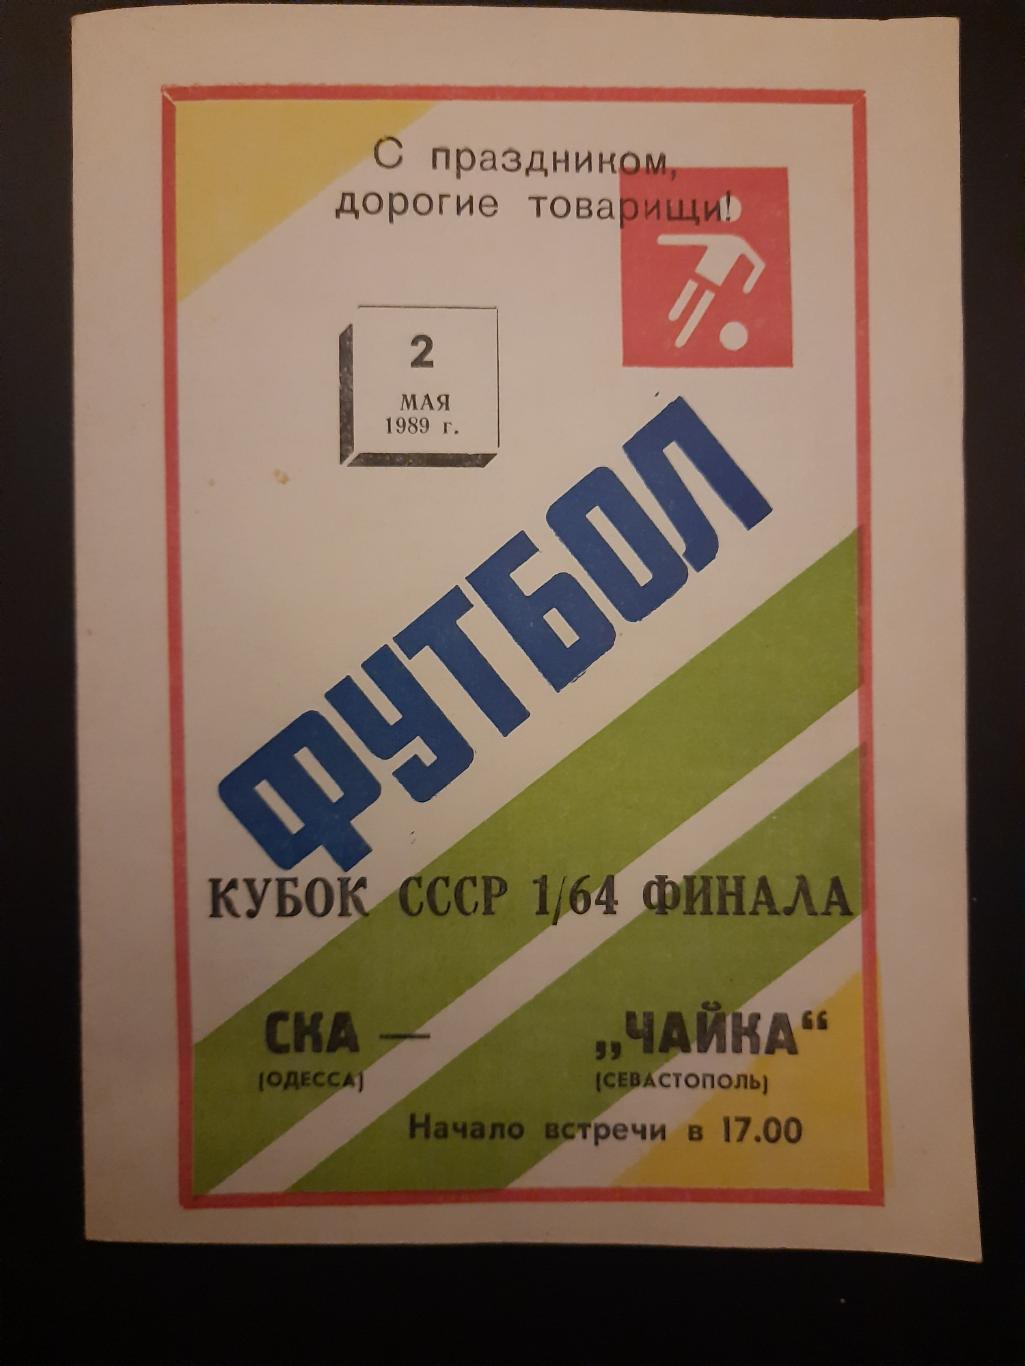 СКА Одесса - Чайка Севастополь 2.05.1989,кубок